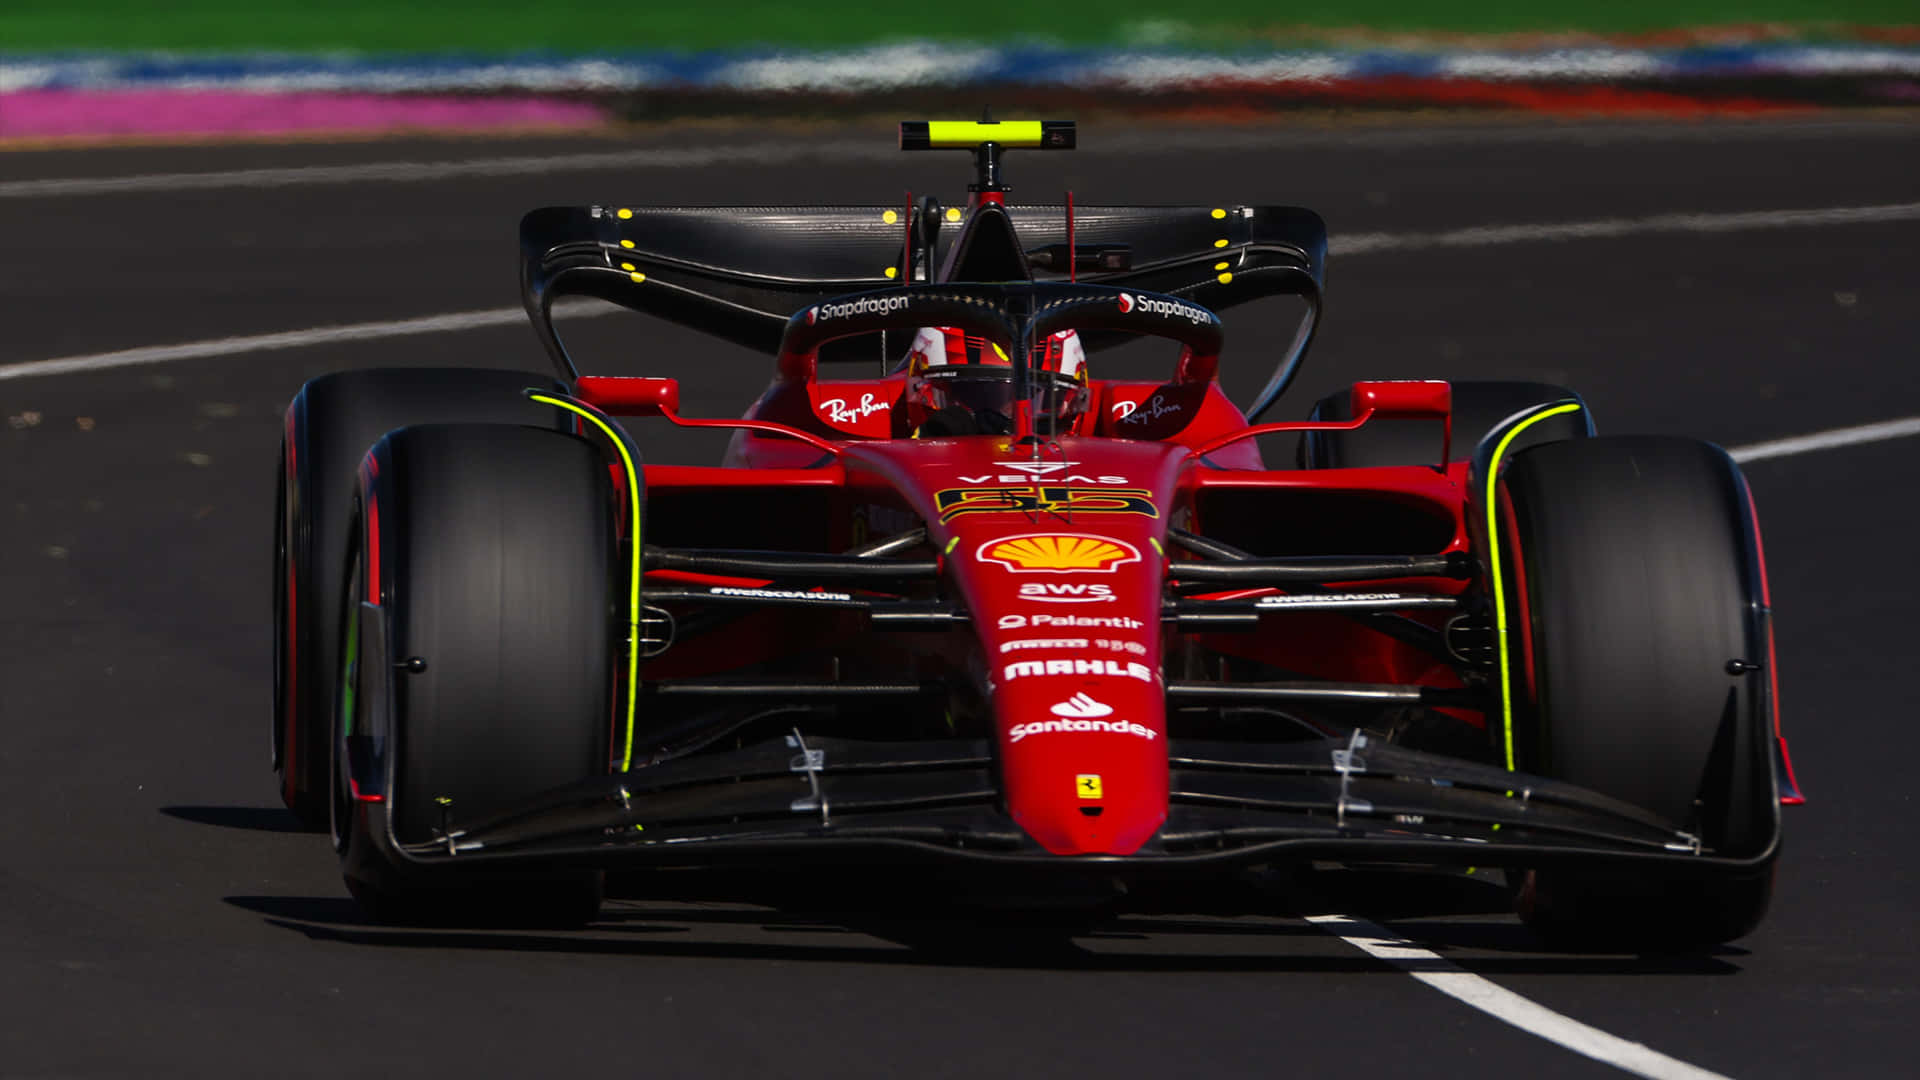 Ferrarif1 Under Scuderias Testningar. Wallpaper